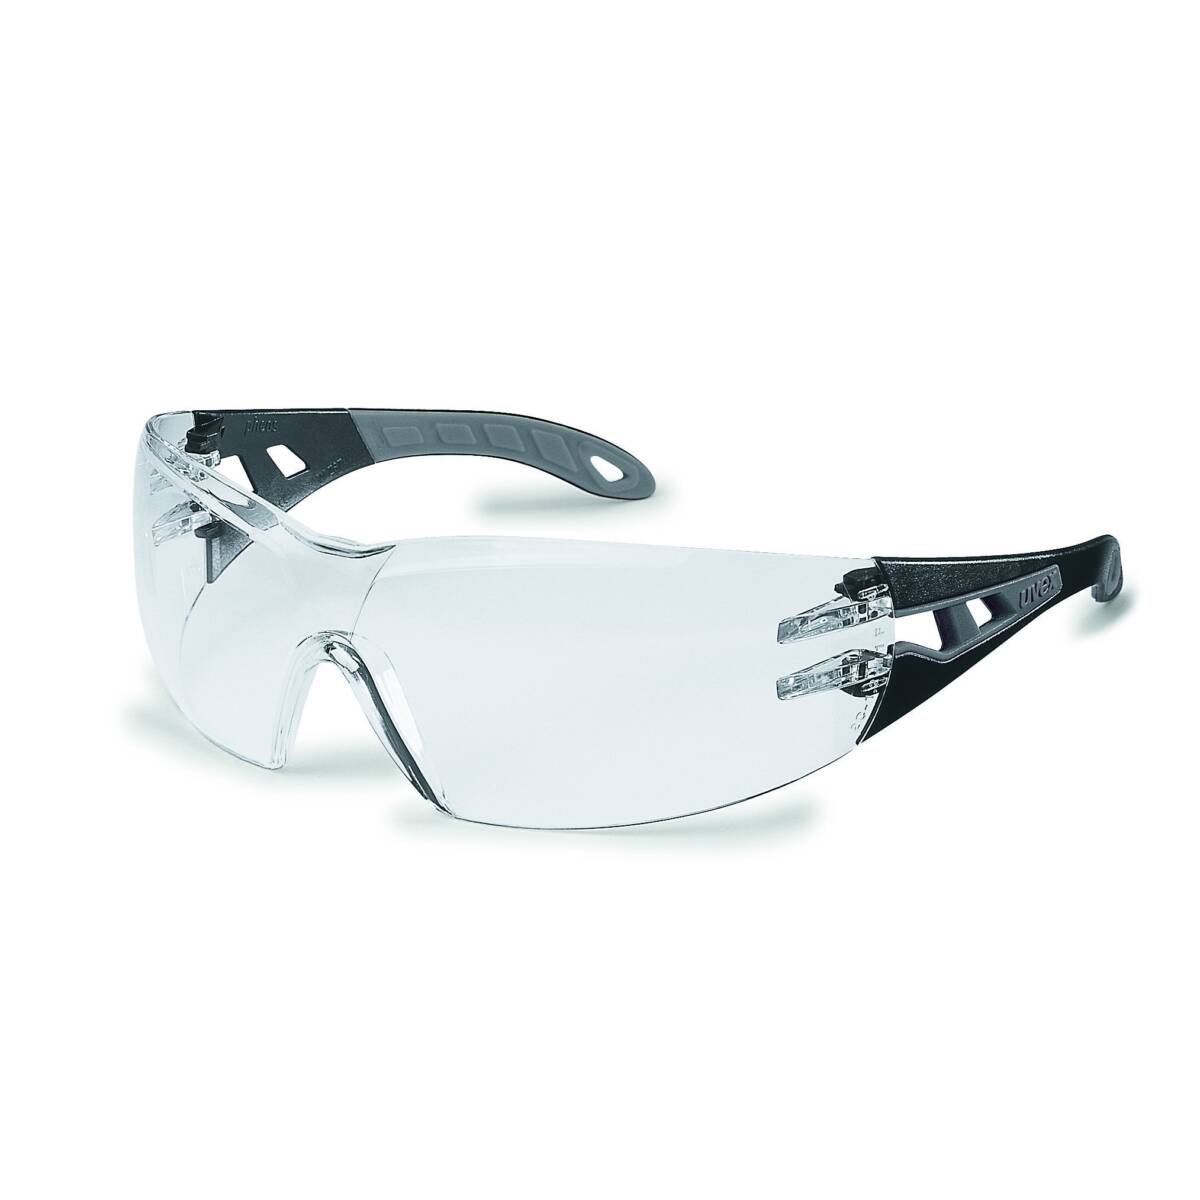 Brille pheos s pc farbl supr excel (gr) - Schutzbrille - Vandeputte Safety  Experts